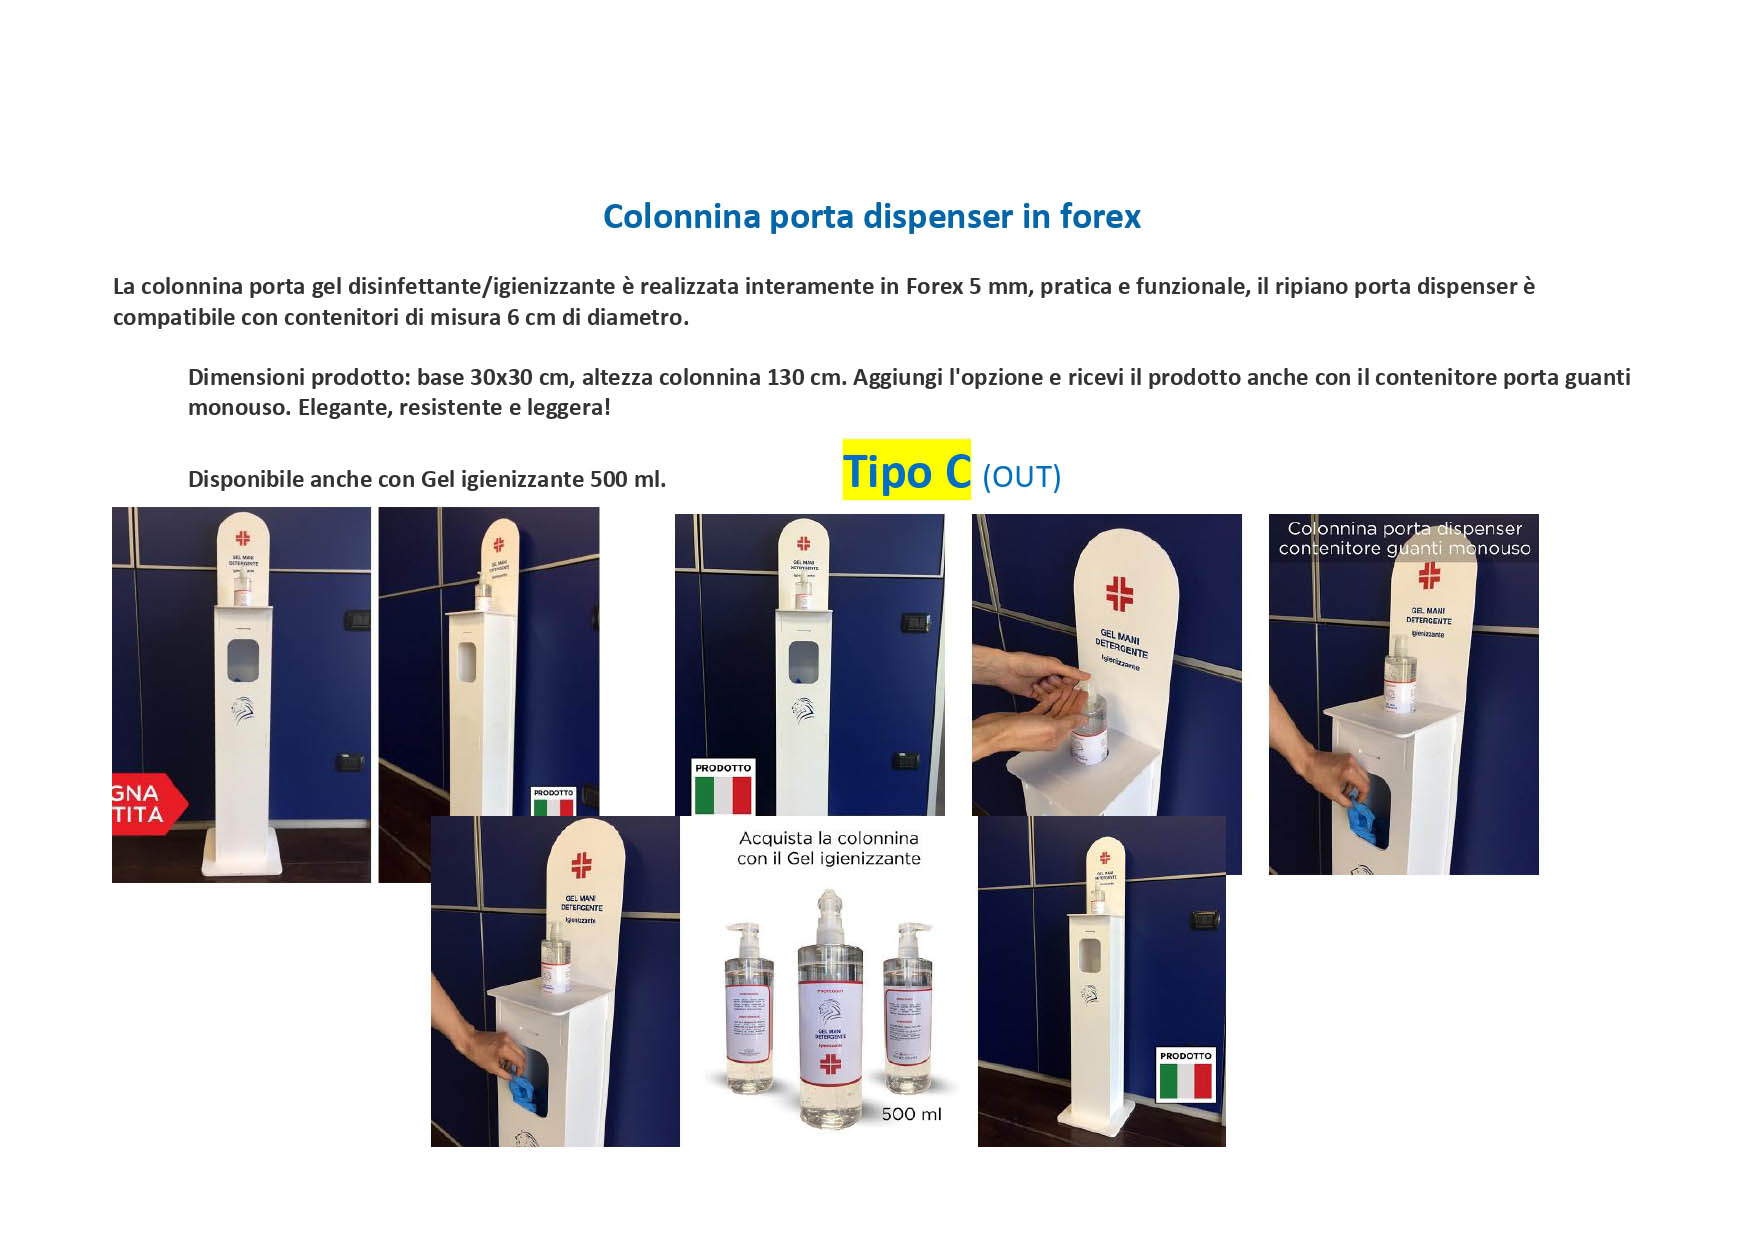 colonnina_porta_dispenser_forex